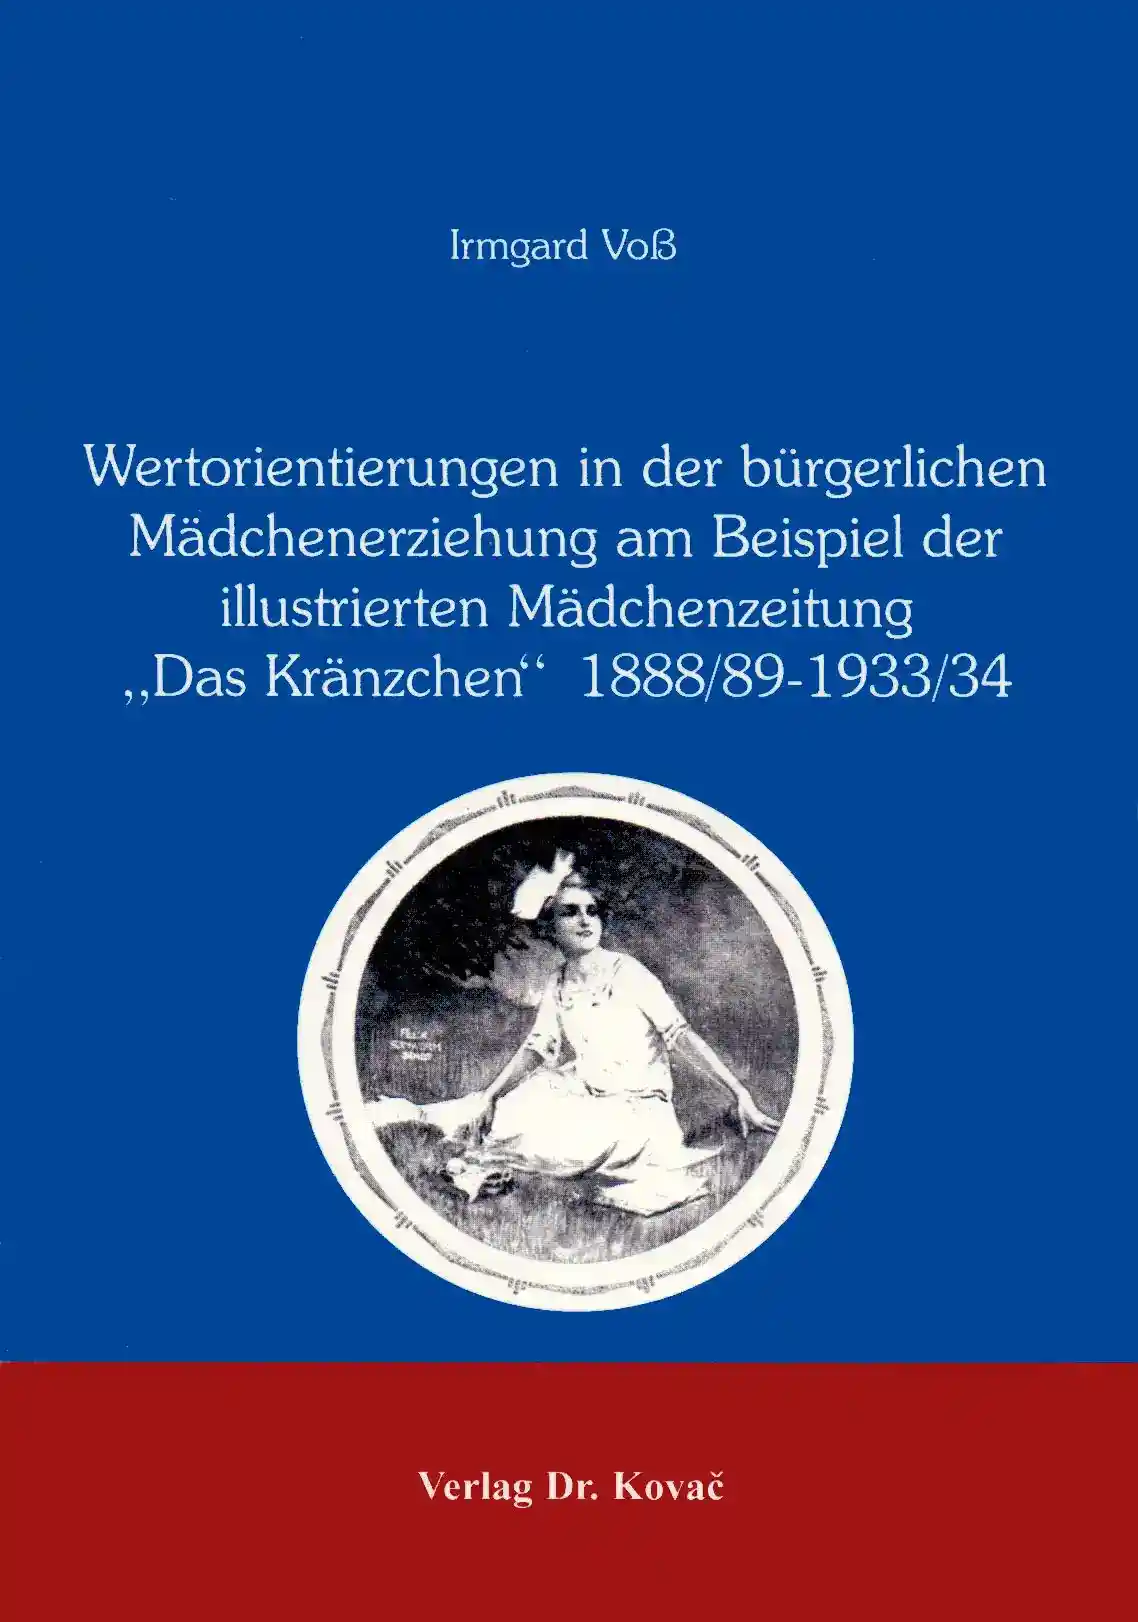 : Wertorientierungen in der bürgerlichen Mädchenerziehung am Beispiel der illustrierten Mädchenzeitung "Das Kränzchen" 1888/89-1933/34